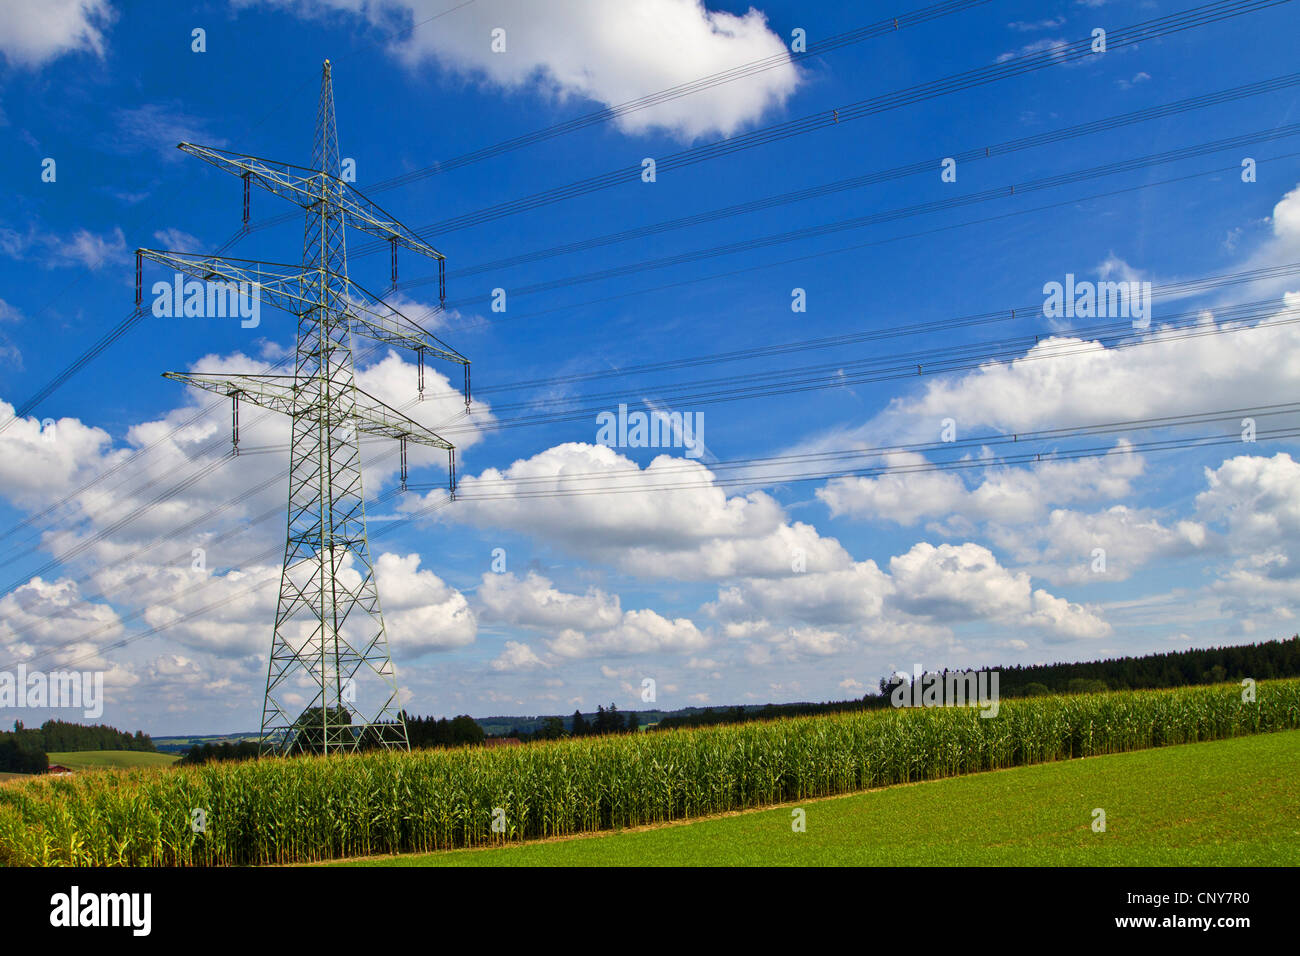 Le maïs, le maïs (Zea mays), champ de maïs et les lignes d'alimentation électrique, l'Allemagne, la Bavière Banque D'Images